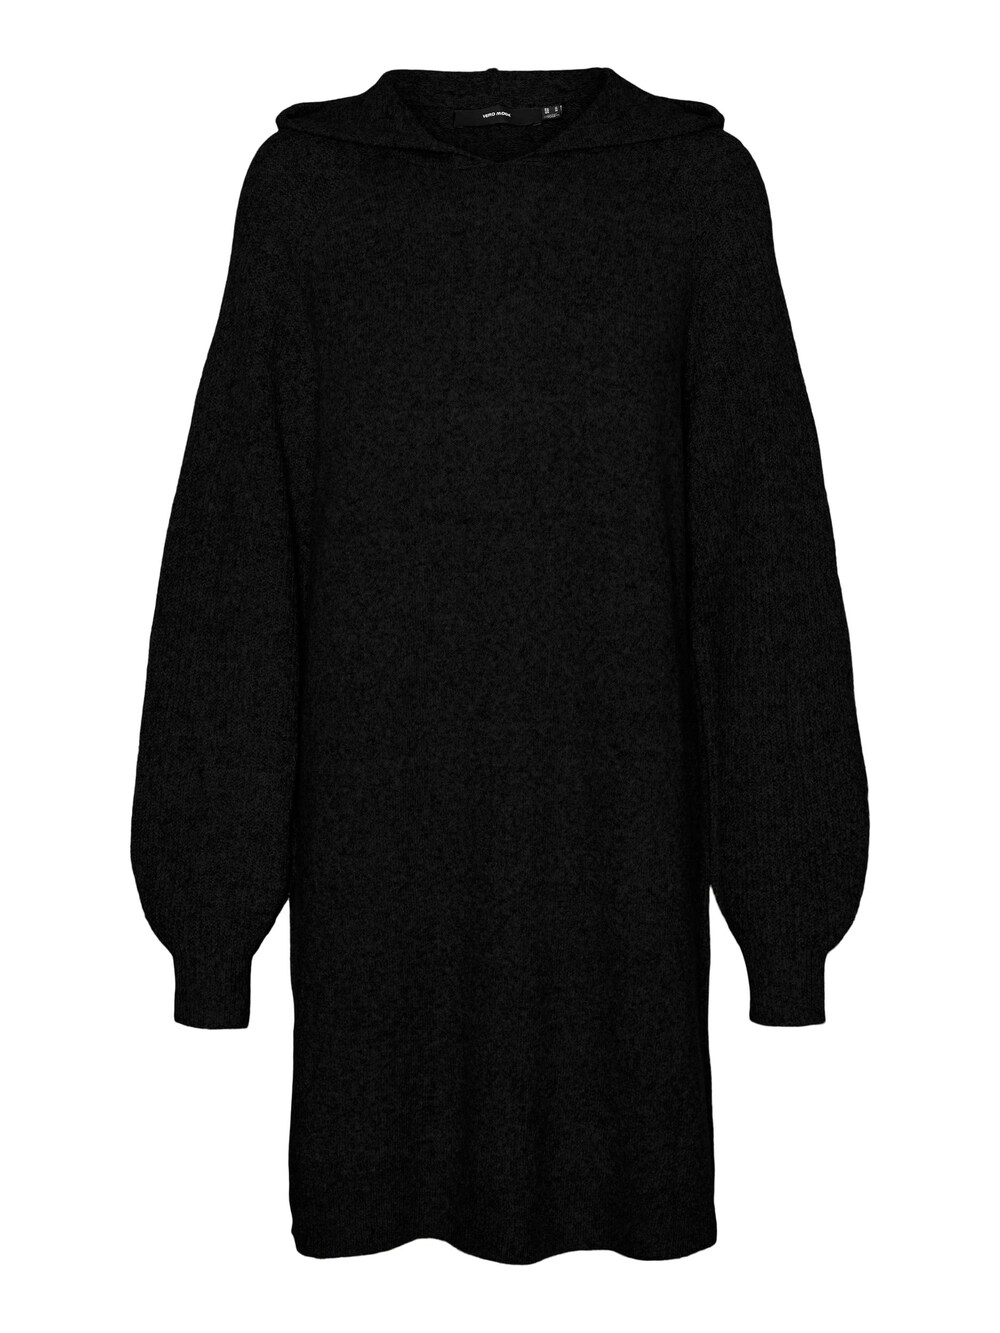 Вязанное платье Vero Moda Doffy, черный